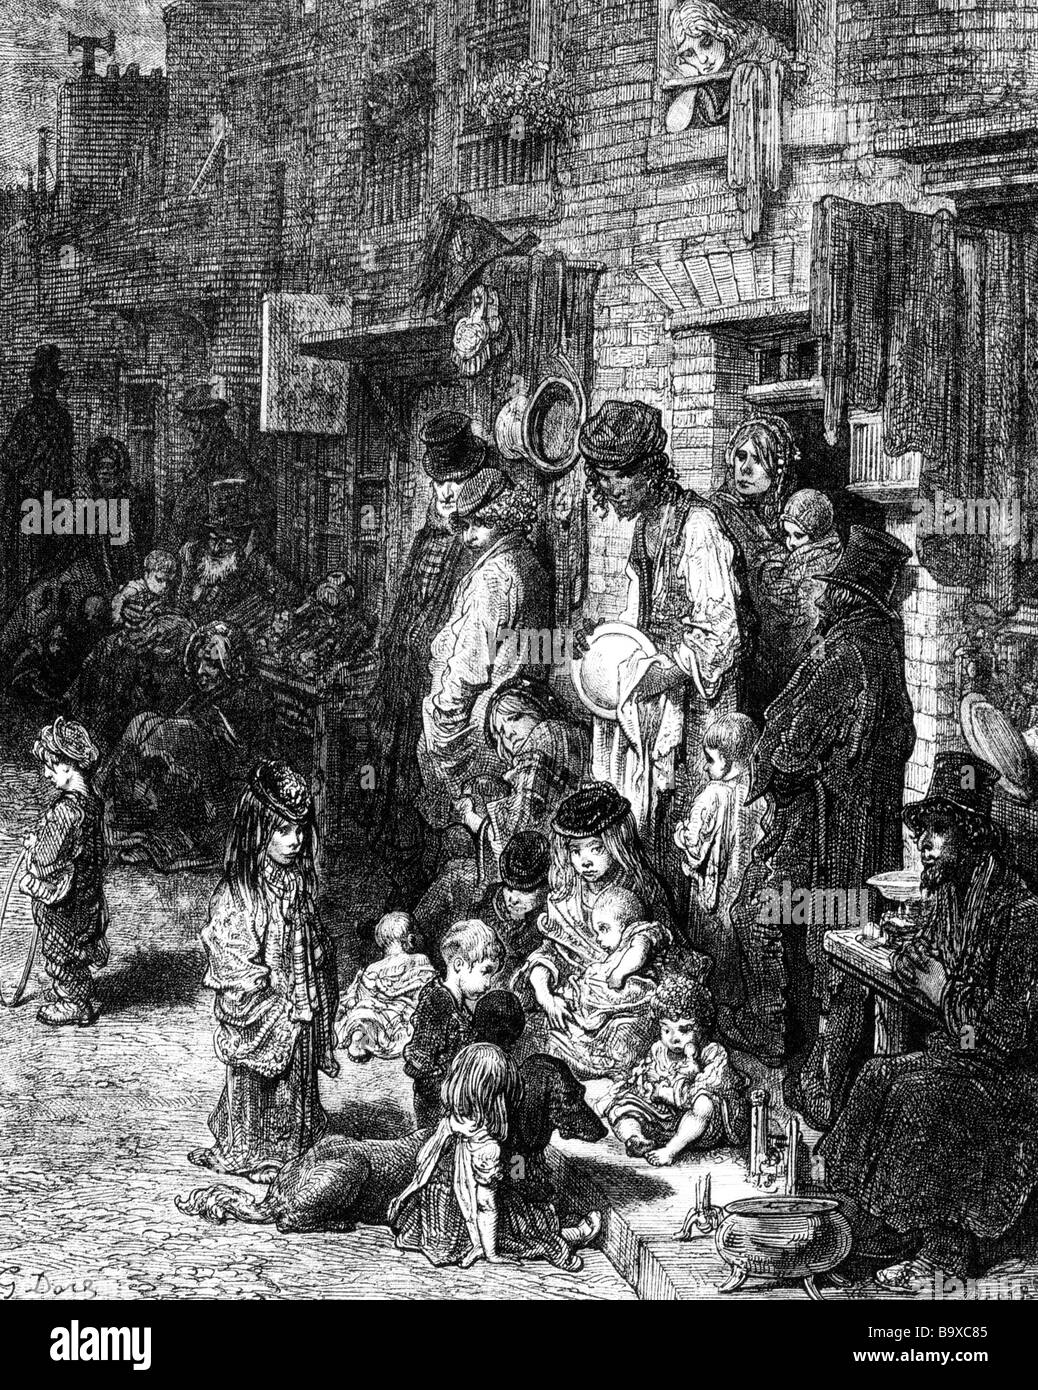 Les taudis de Londres en 1872 dans le quartier de Whitechapel Banque D'Images